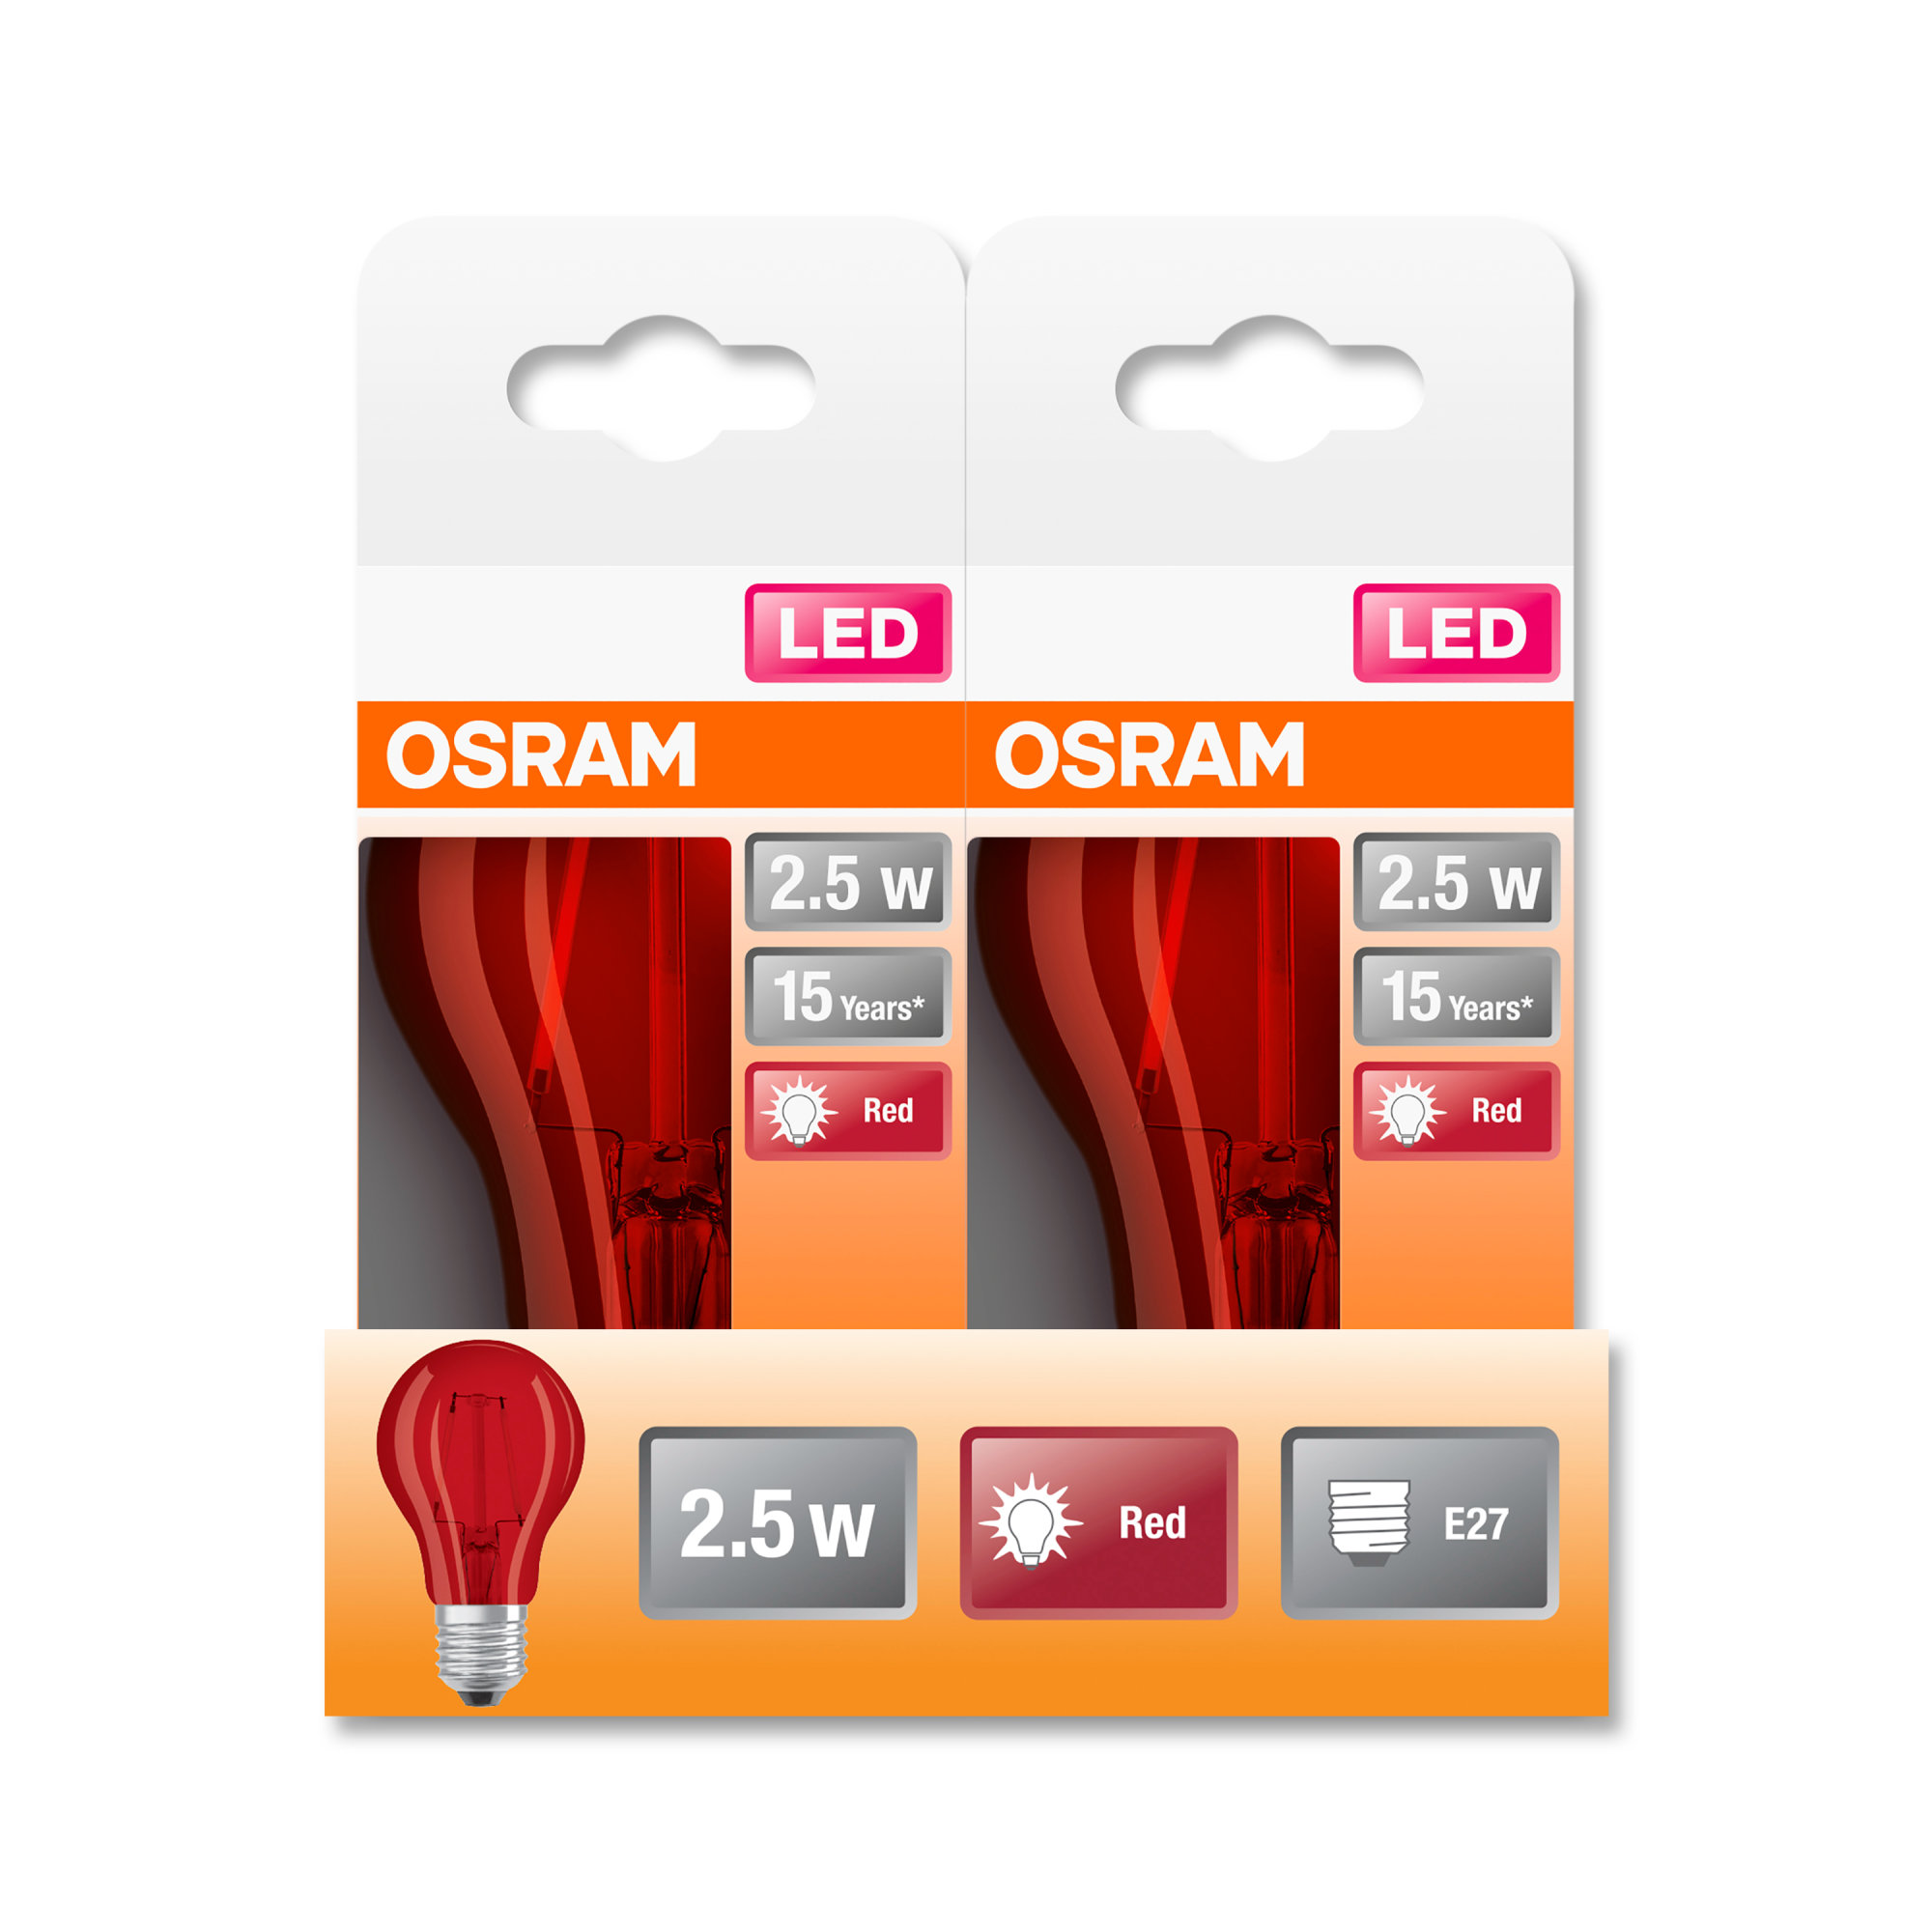 Bec Osram LED SUPERSTAR CLA 15 DécorRed non-dim 2,5W 827 E27 136lm 2700K